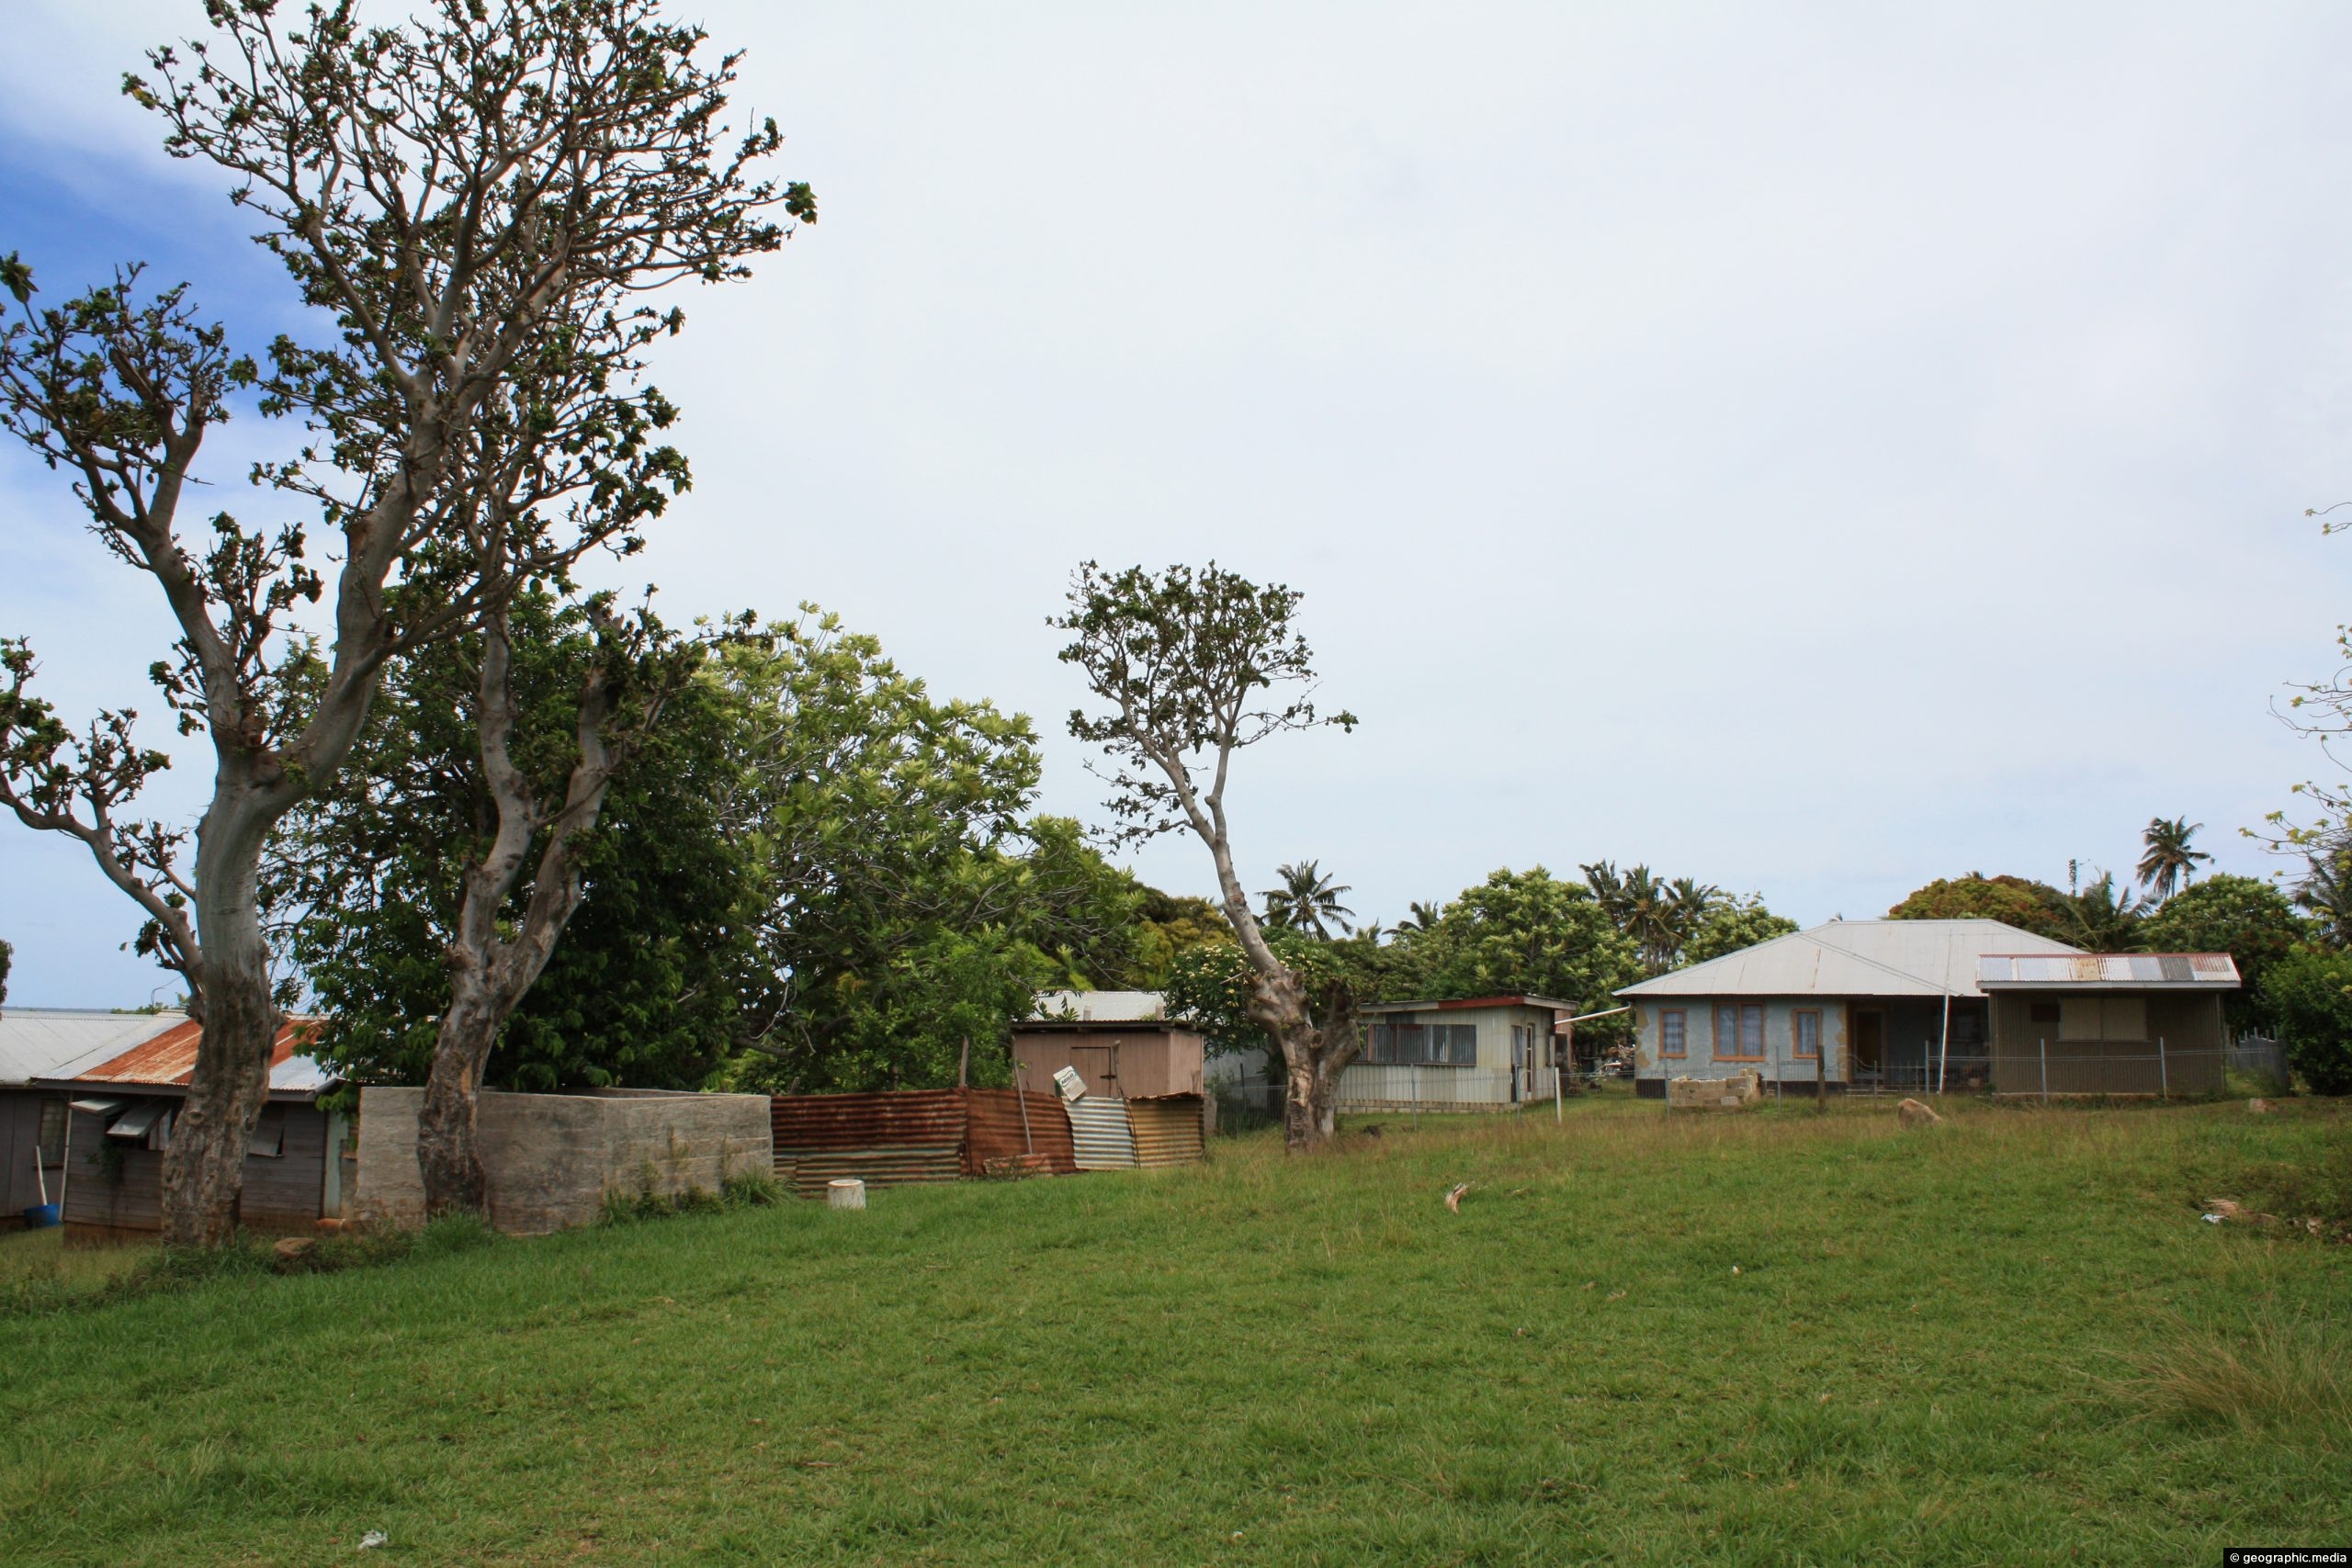 Houses on Atata Island Tonga